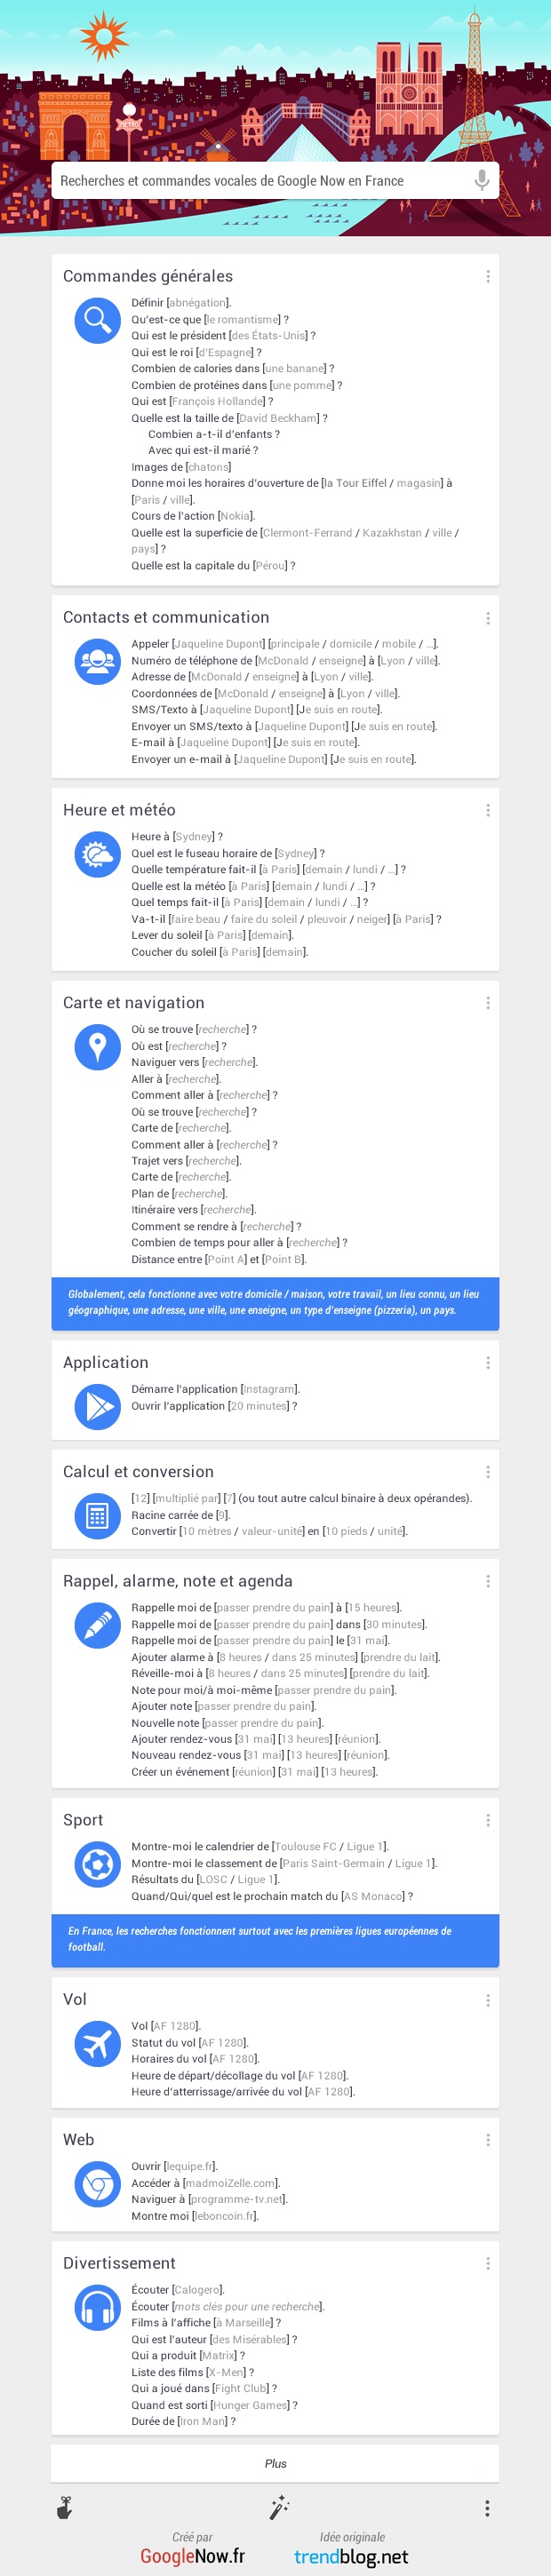 Google Now - Liste recherches commandes vocales en francais - Infographie GoogleNowFR